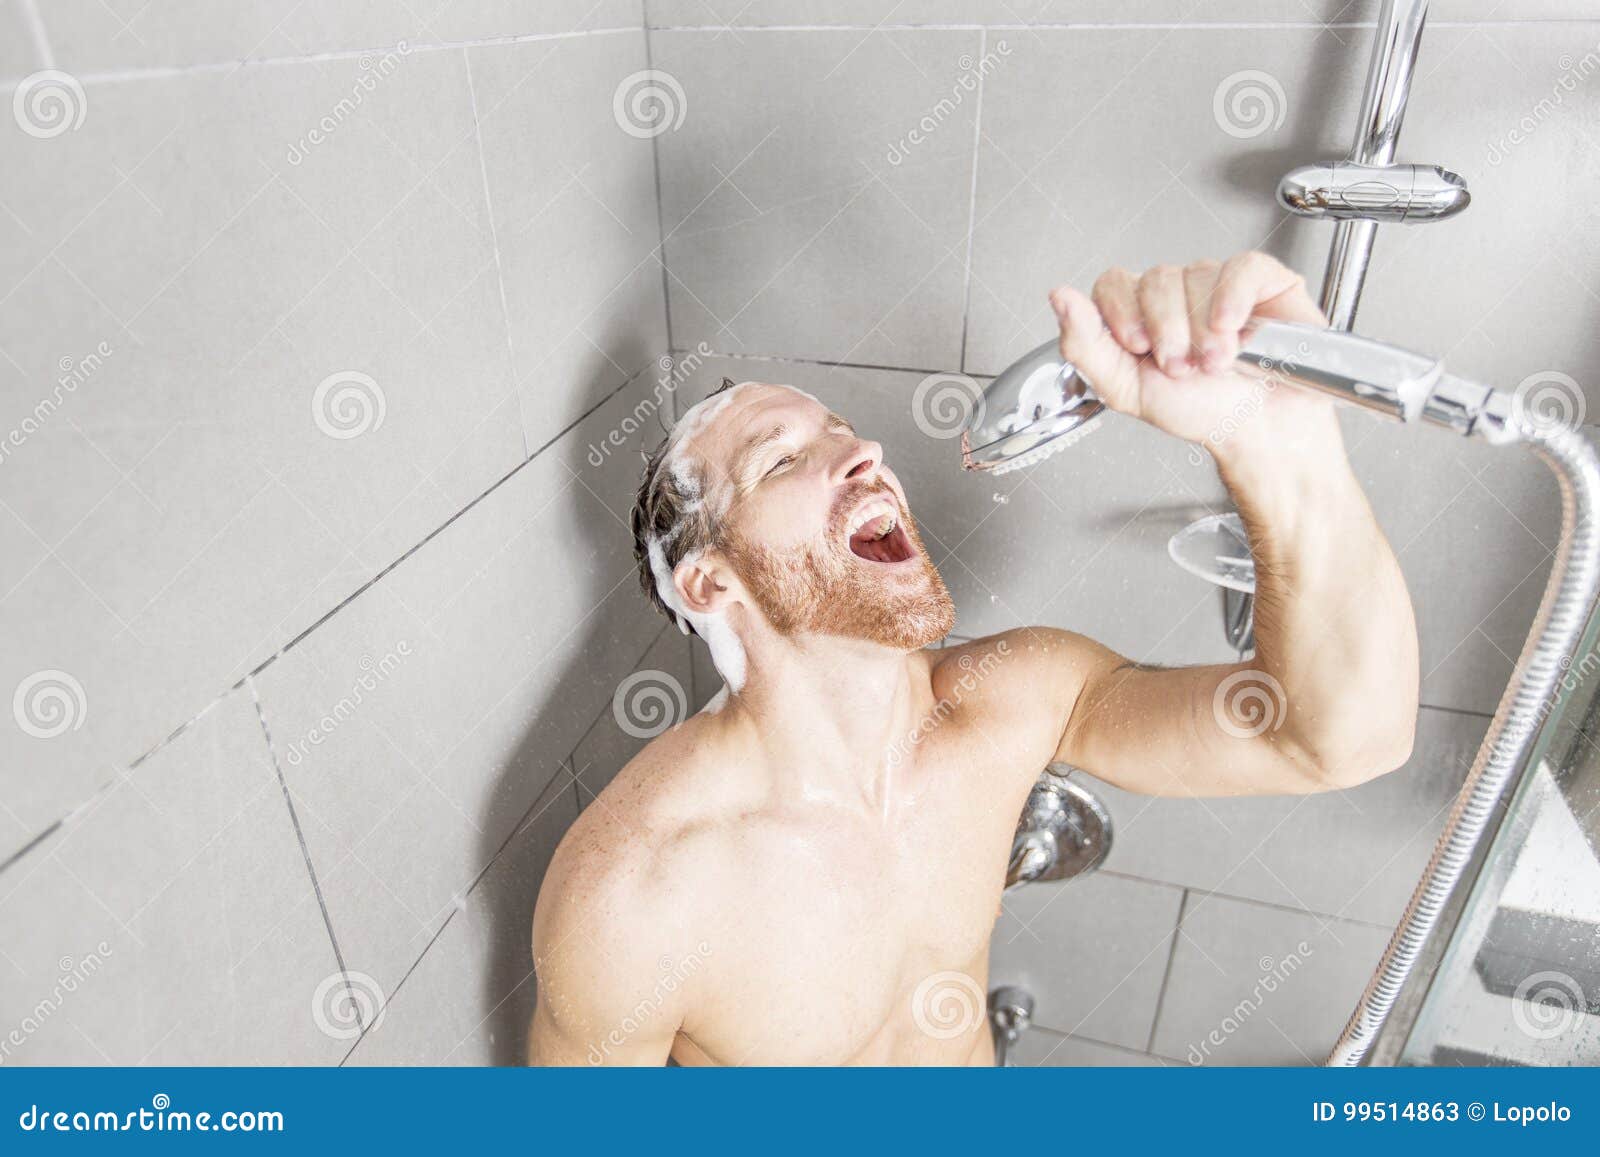 Братья в душе 18. Мужик под душем. Самоудовлетворение в душе. Мужчина в ванной. Мужская ванная комната с одним шампунем.